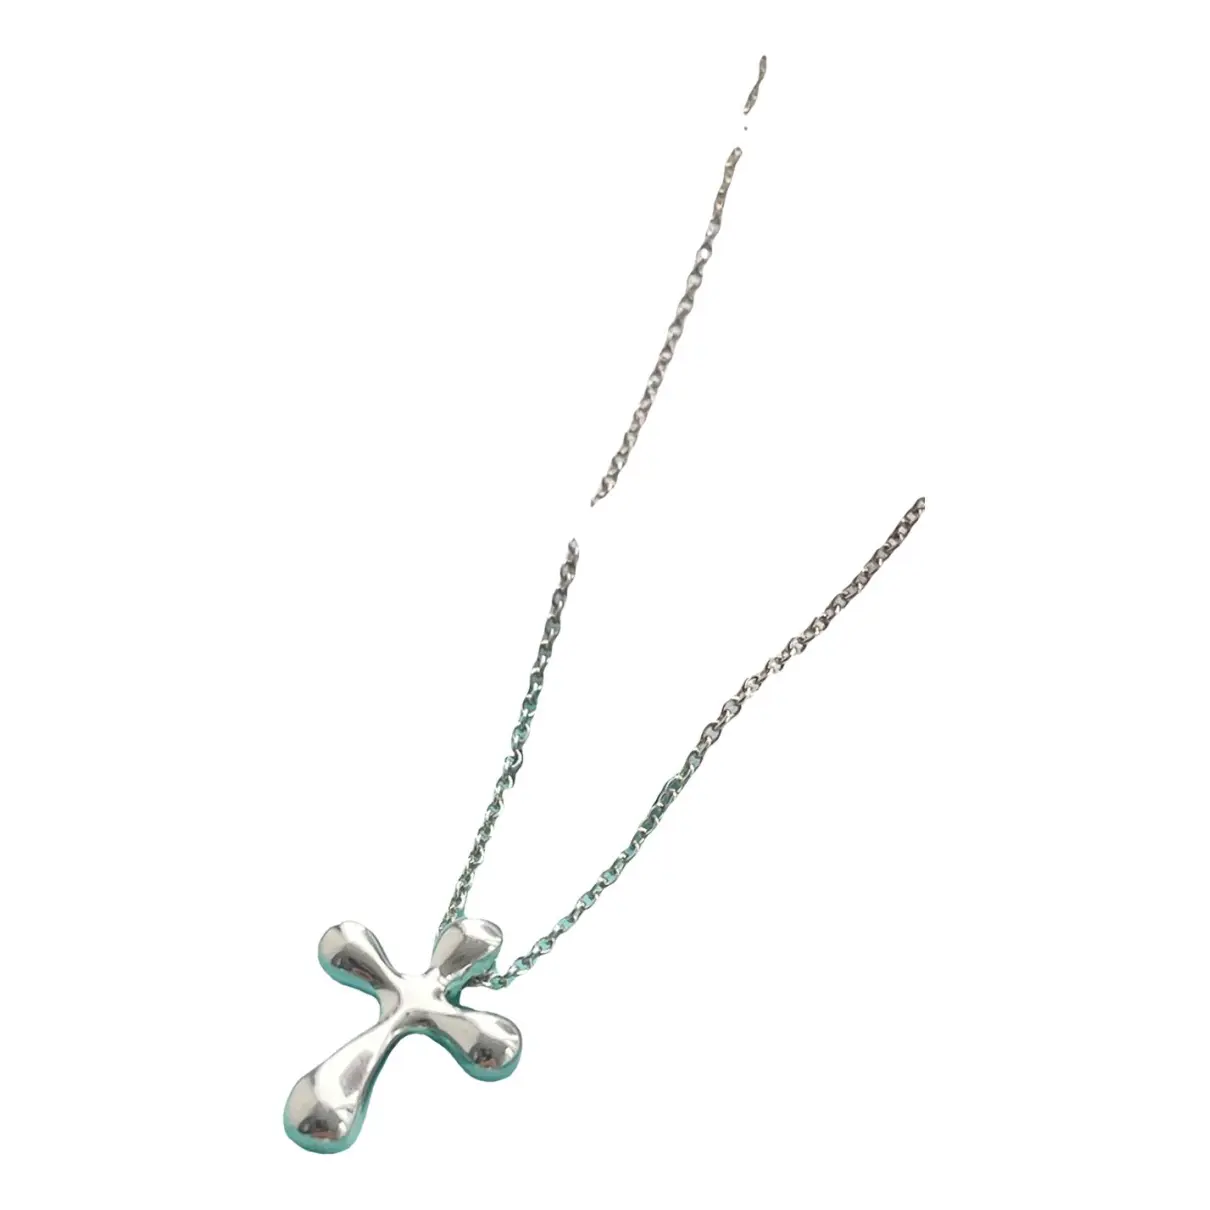 Elsa Peretti silver necklace